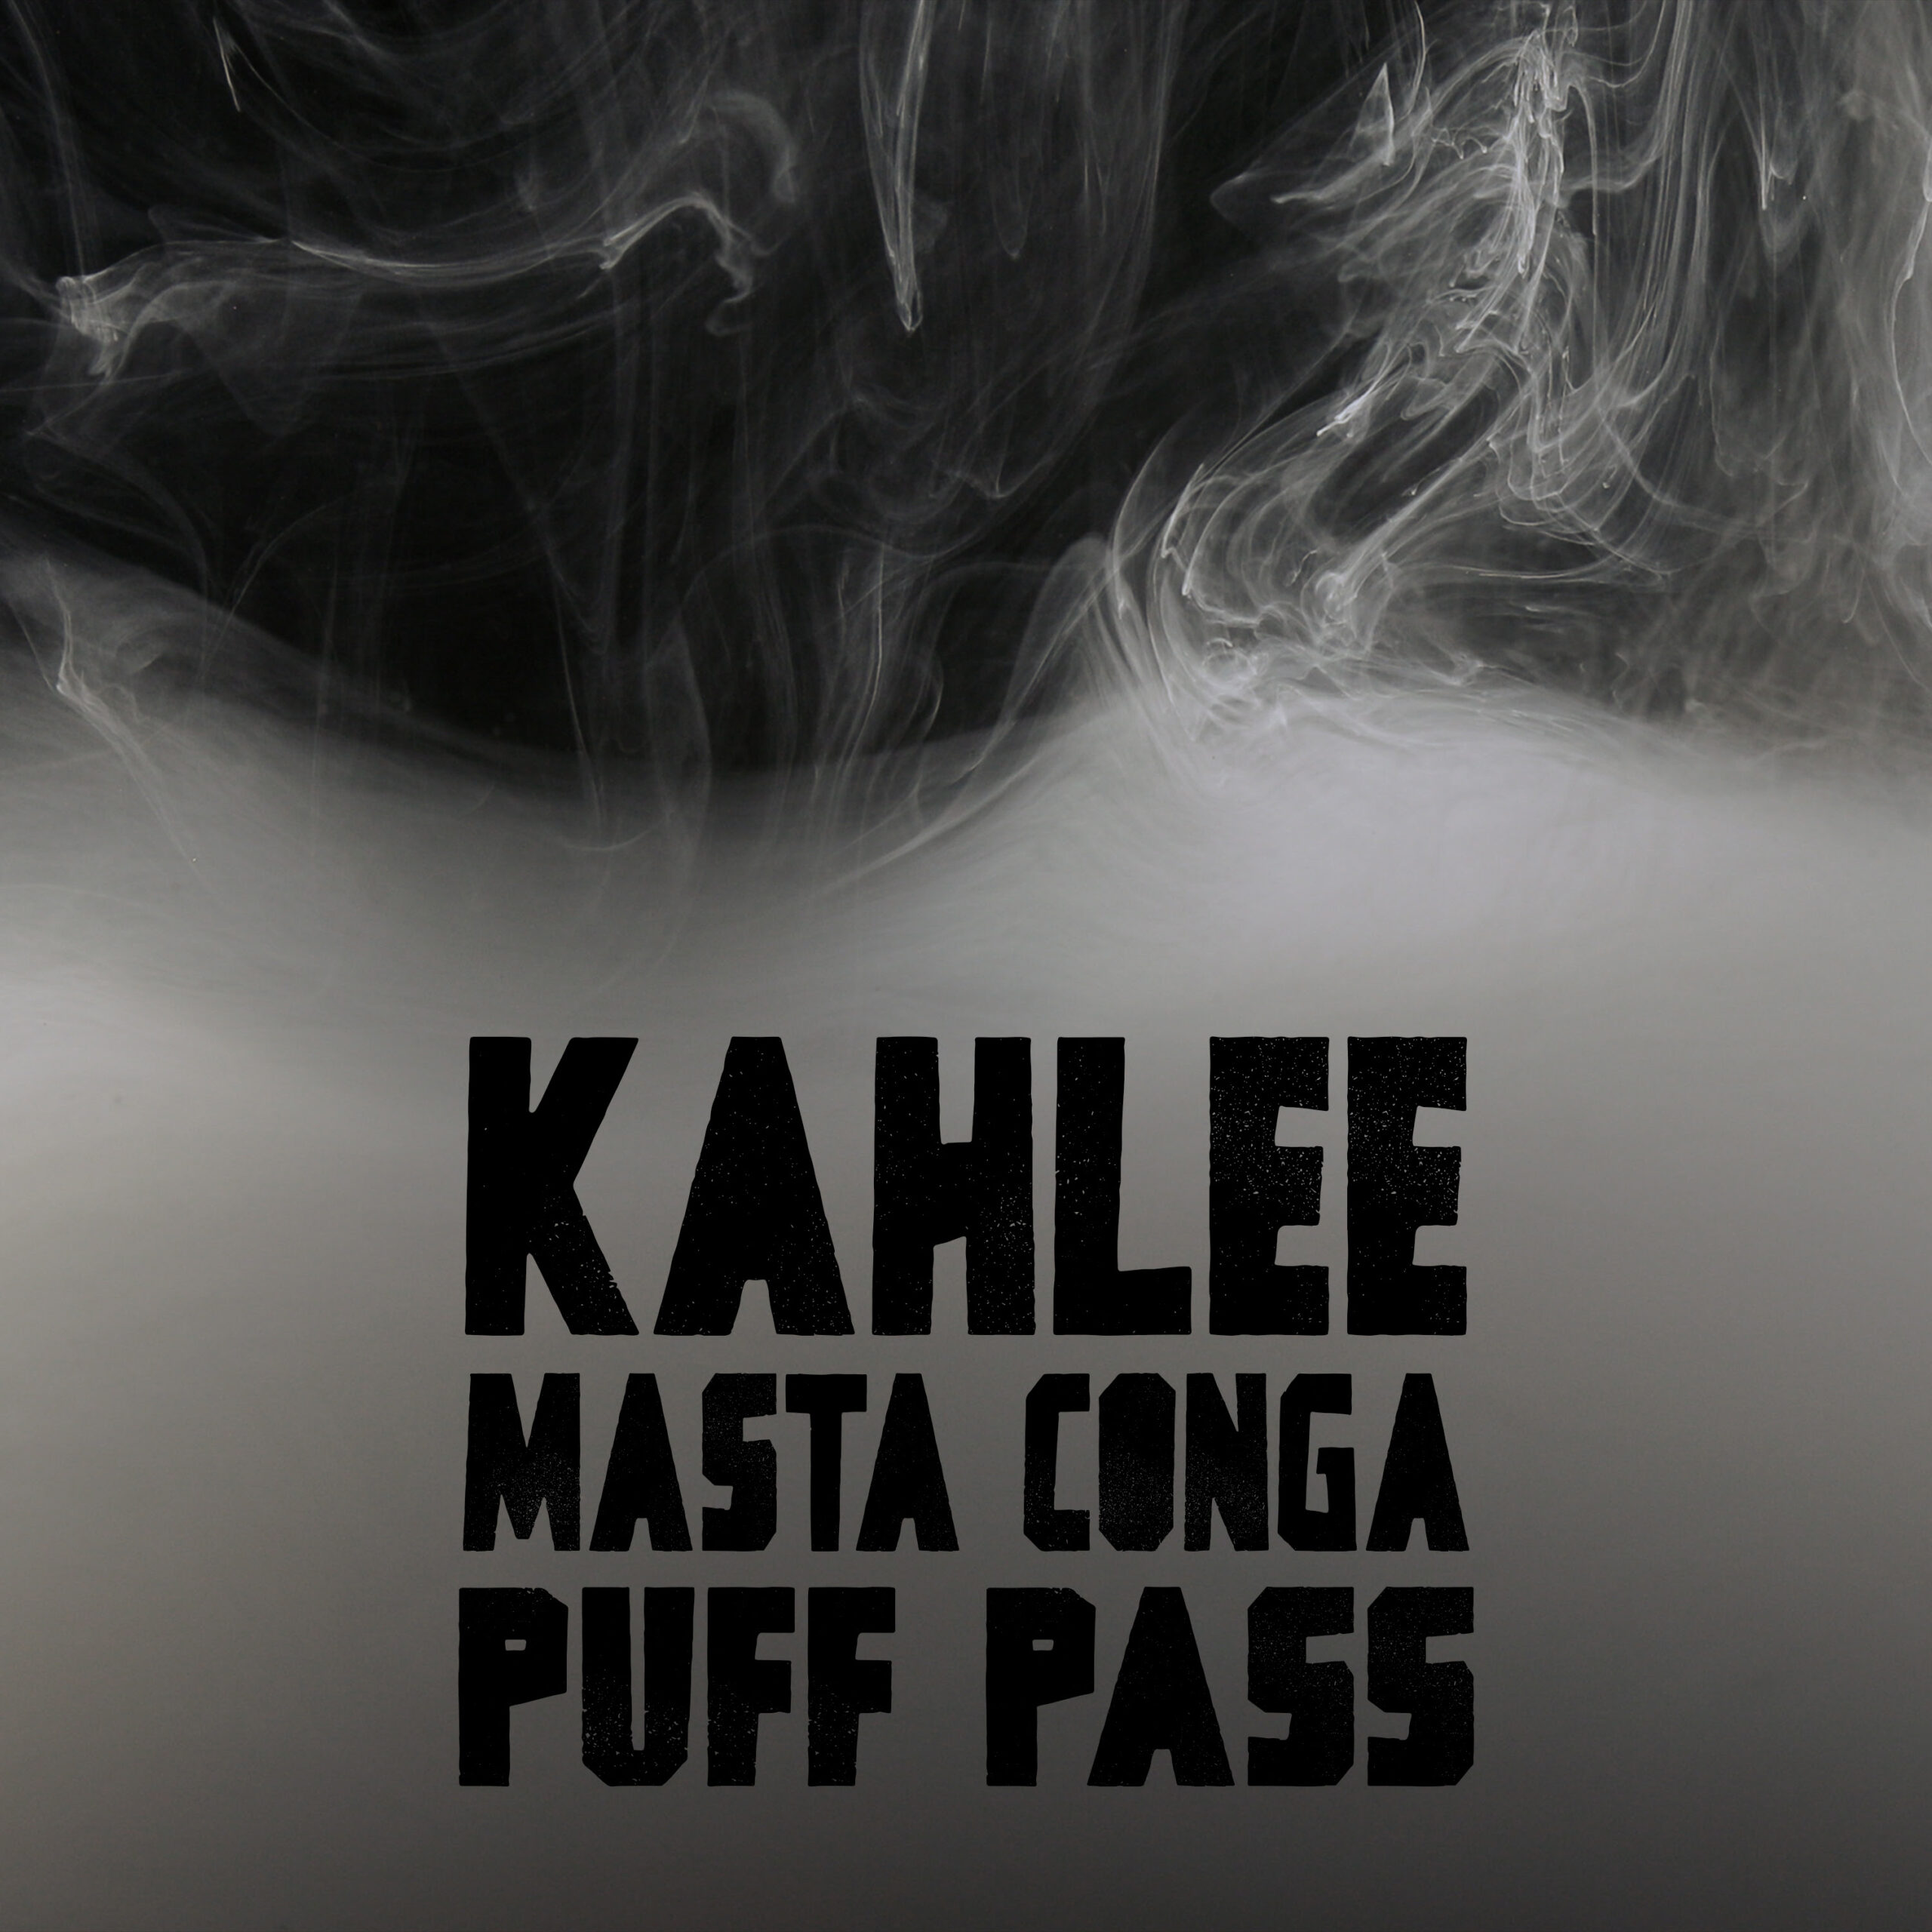 Kahlee x Masta Conga - Puff, Pass